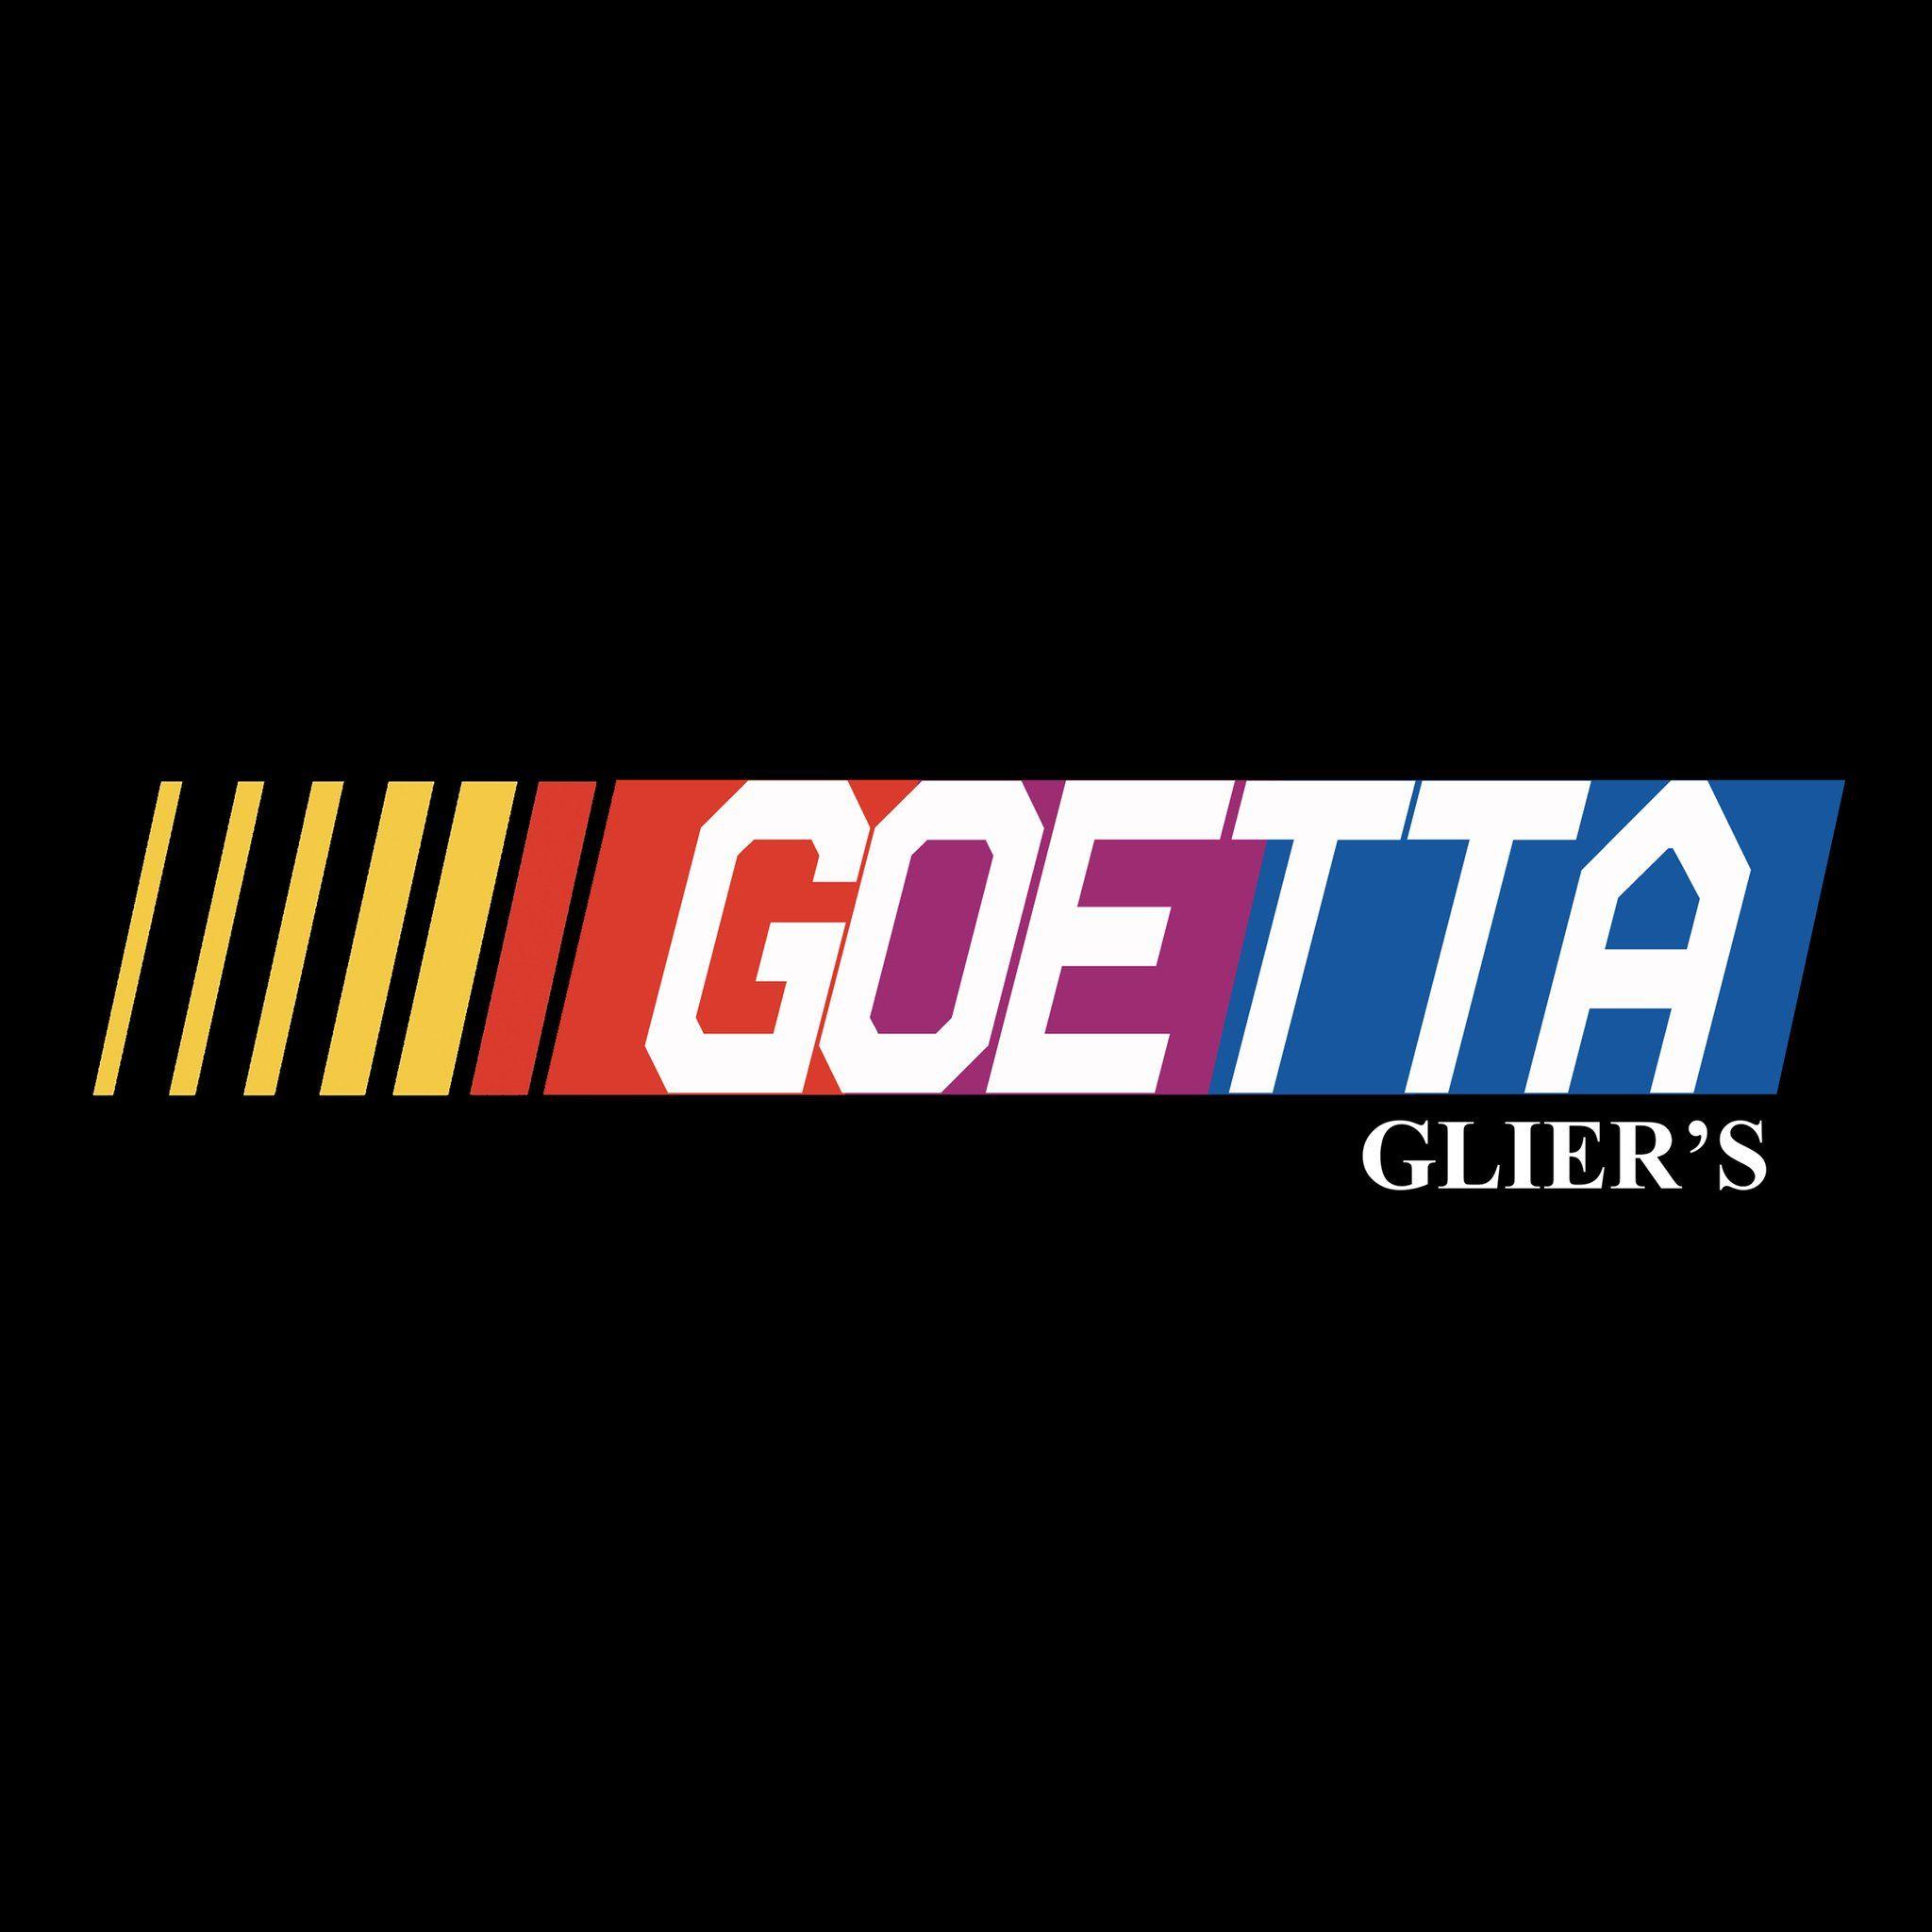 Race Car Logo - Glier's Goetta Race Car Logo. Cincinnati Food Apparel